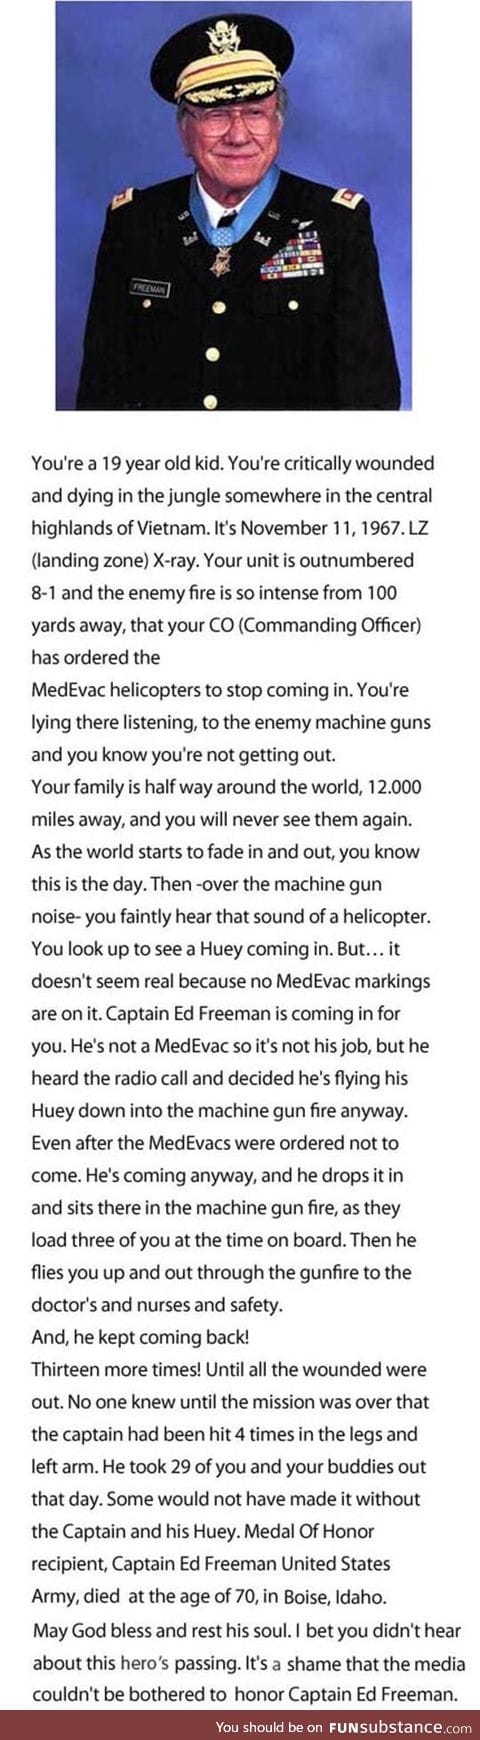 Captain Ed Freeman, an unheard captain